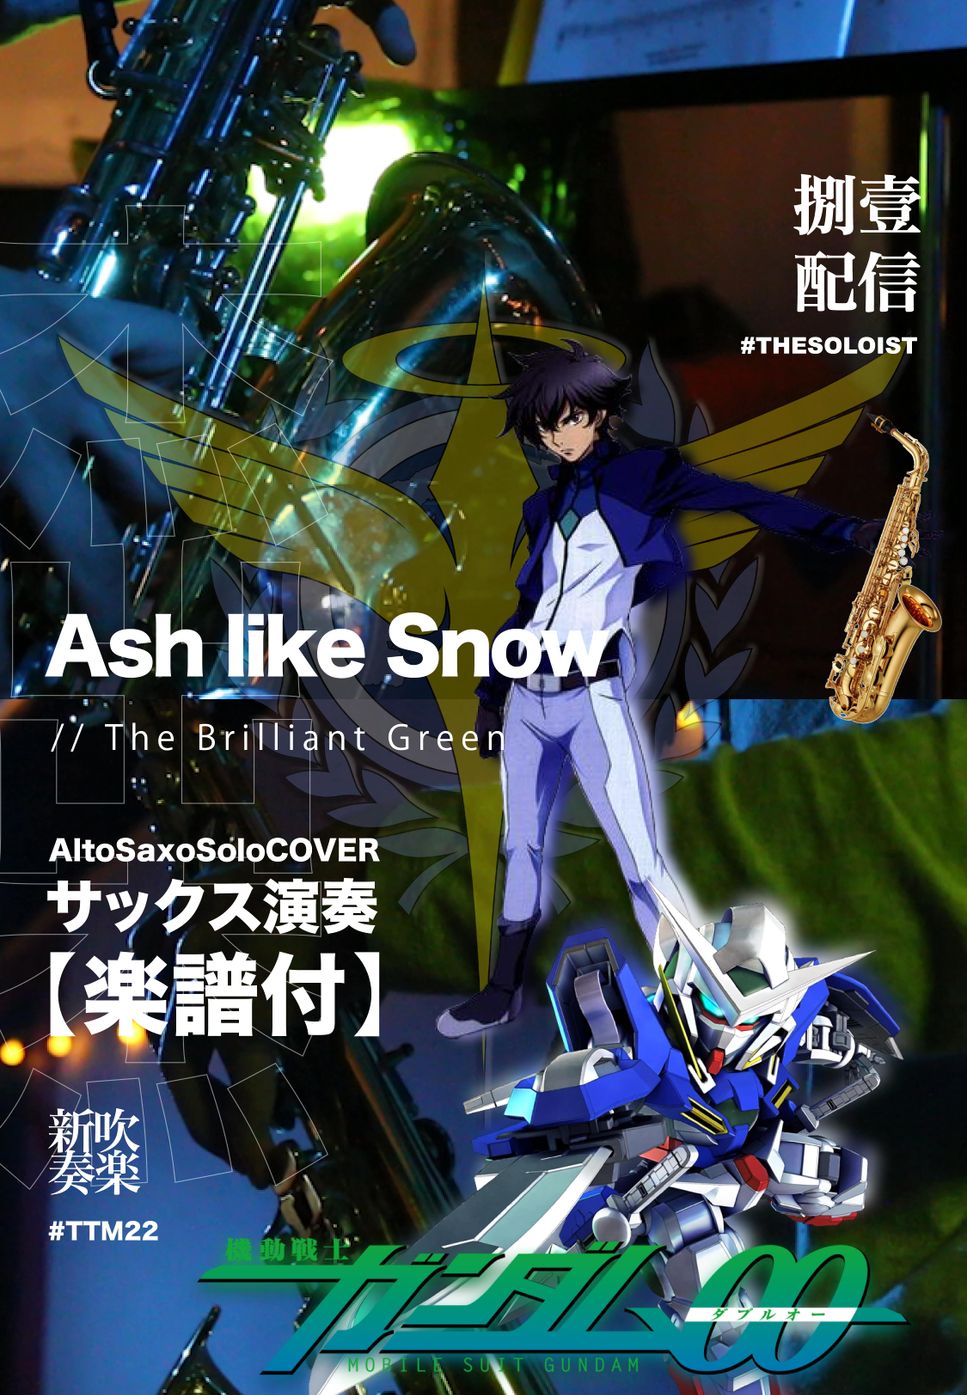 機動戦士ガンダム00 - Ash like Snow (サックス演奏) by FungYip